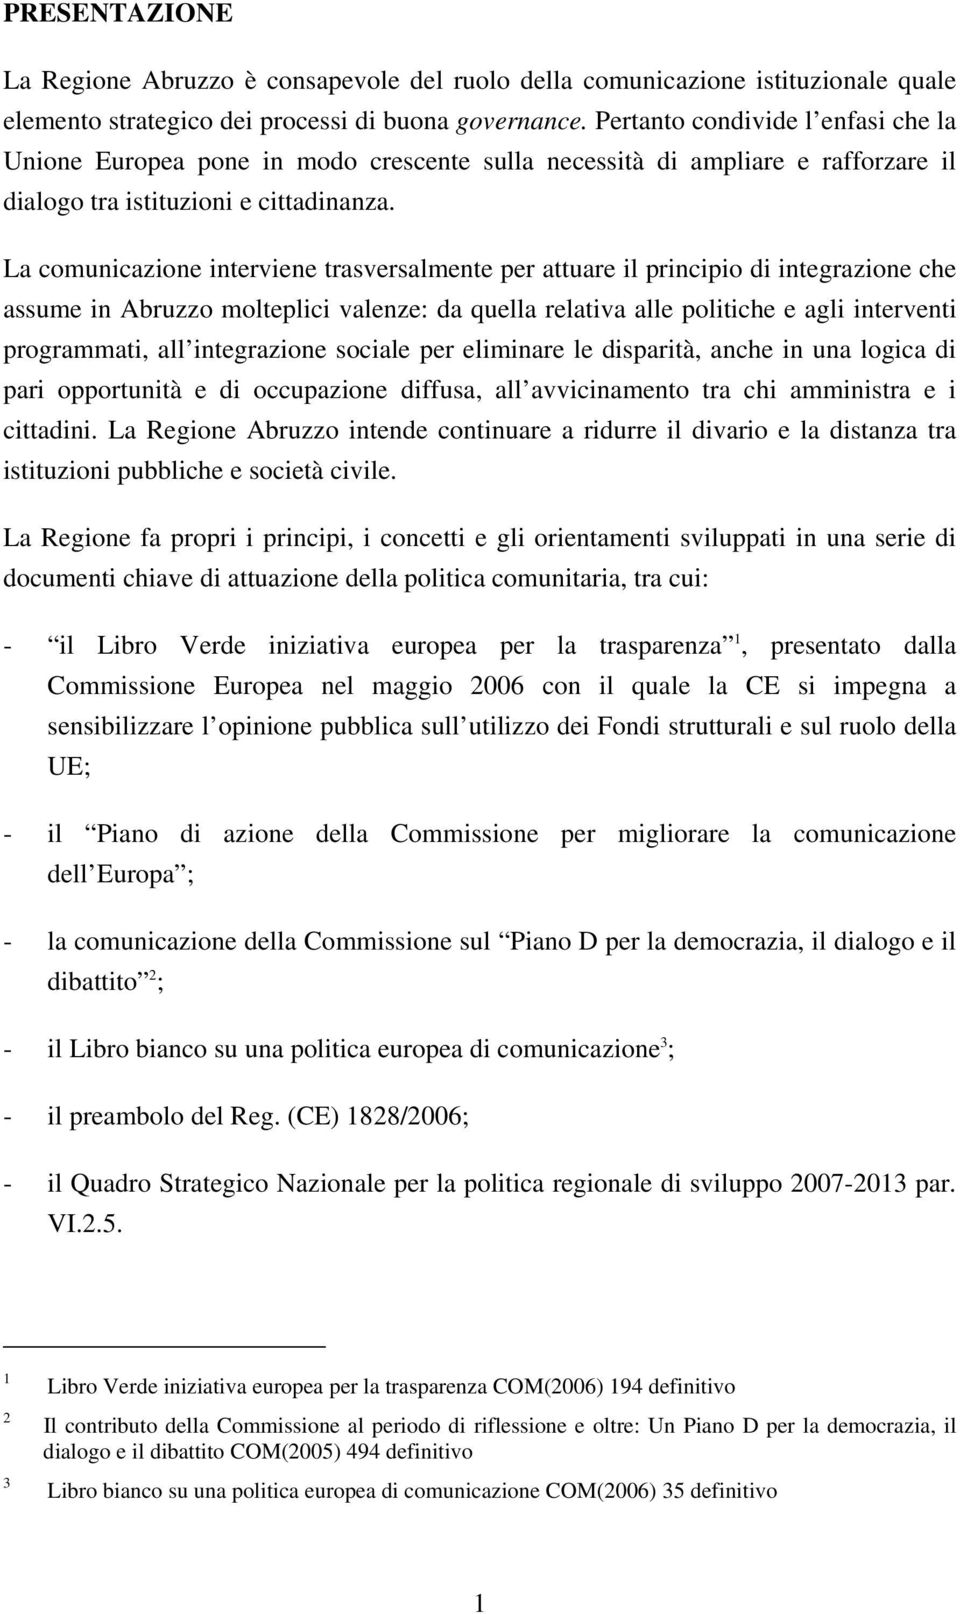 La comunicazione interviene trasversalmente per attuare il principio di integrazione che assume in Abruzzo molteplici valenze: da quella relativa alle politiche e agli interventi programmati, all